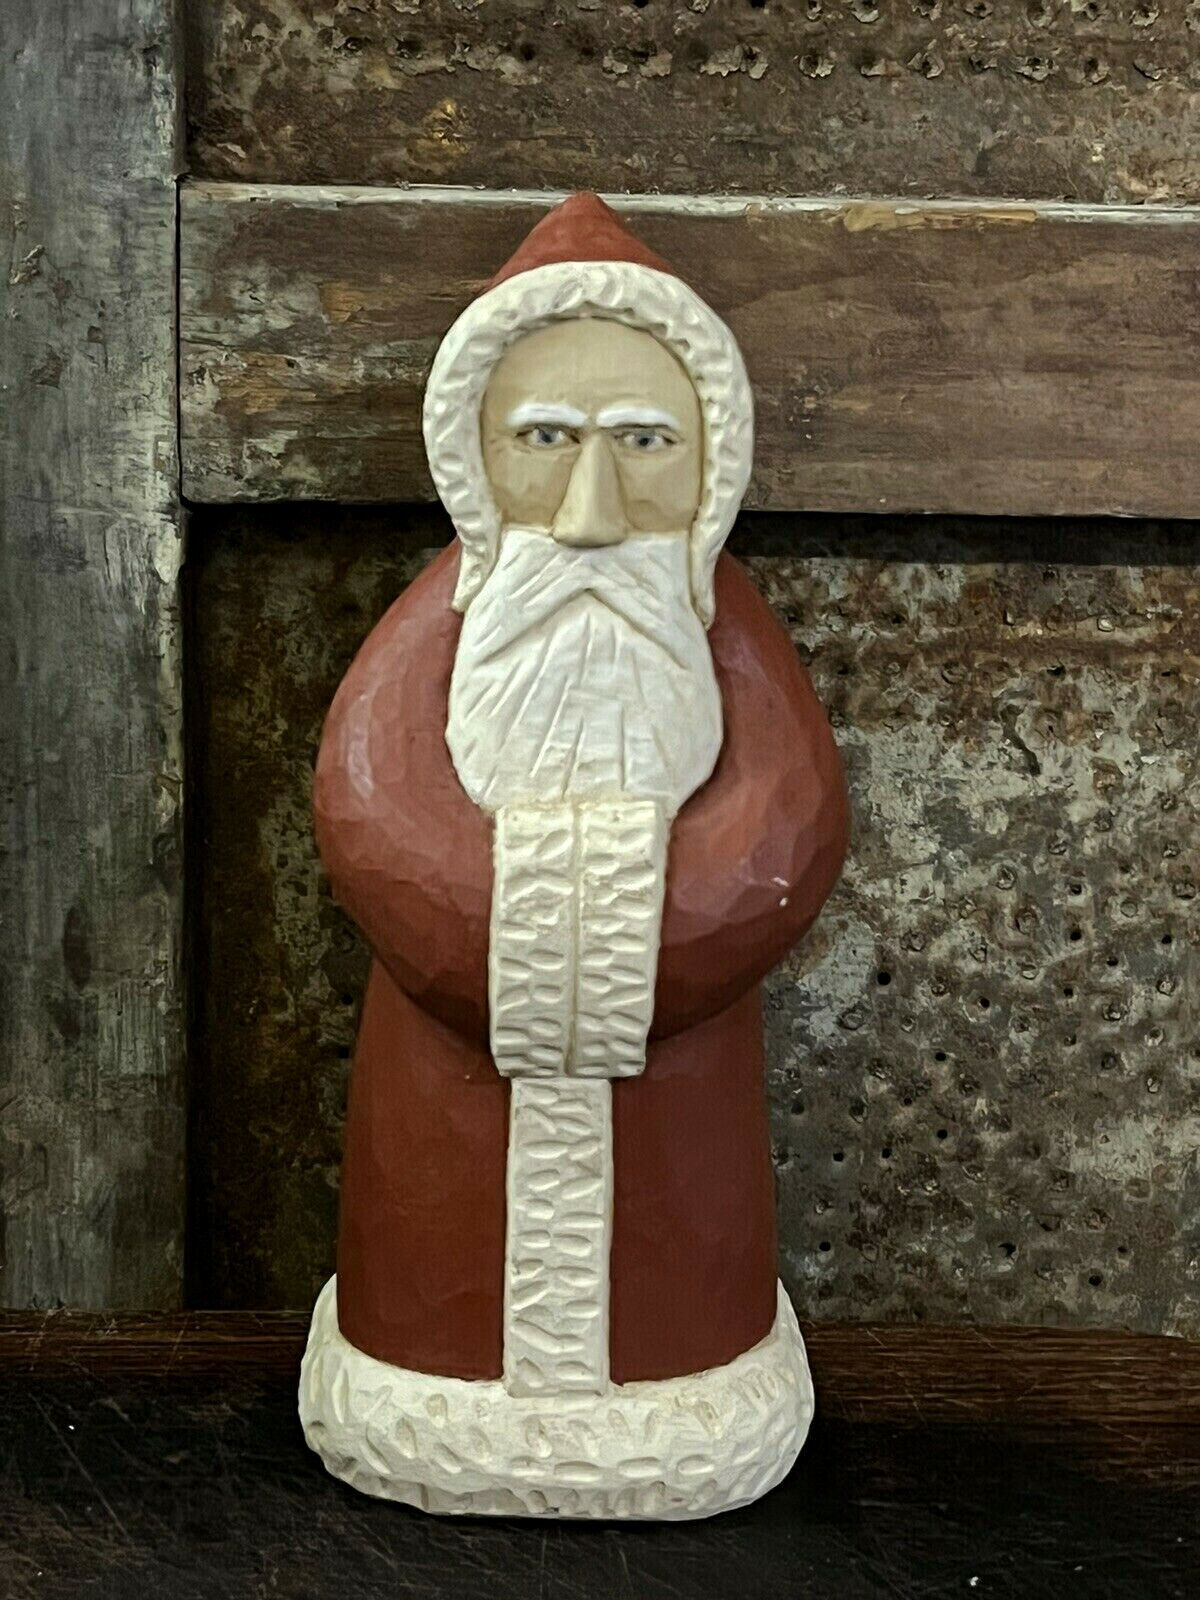 Folk Art Grubby Primitive carved Wood Belsnickle Santa Claus Signed J Krumm